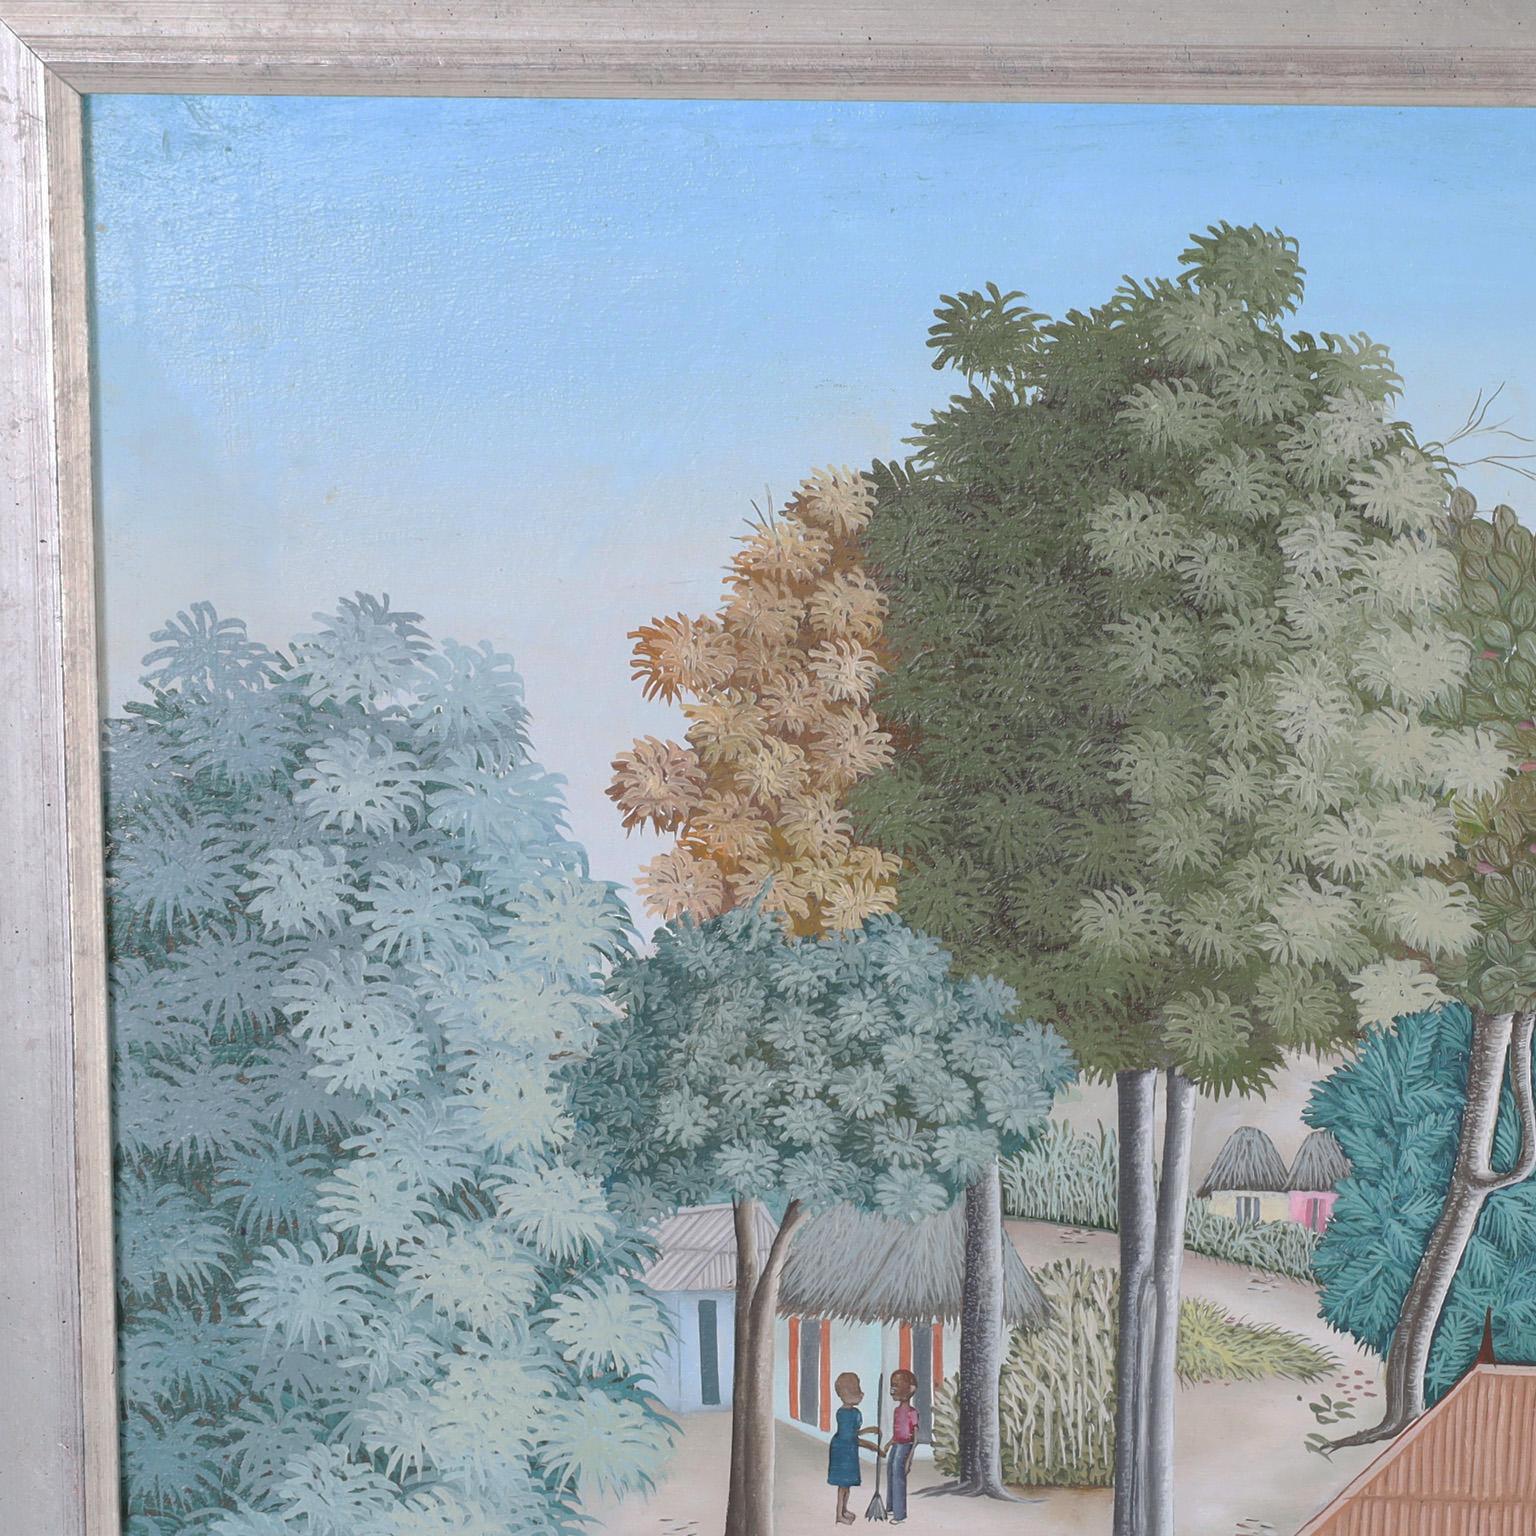 Charmante peinture à l'huile sur toile représentant un village haïtien serein avec des arbres, des fleurs, des oiseaux et des figures ludiques dans un style folklorique naïf. Signé par le célèbre artiste Edouard Tran et présenté dans un cadre en